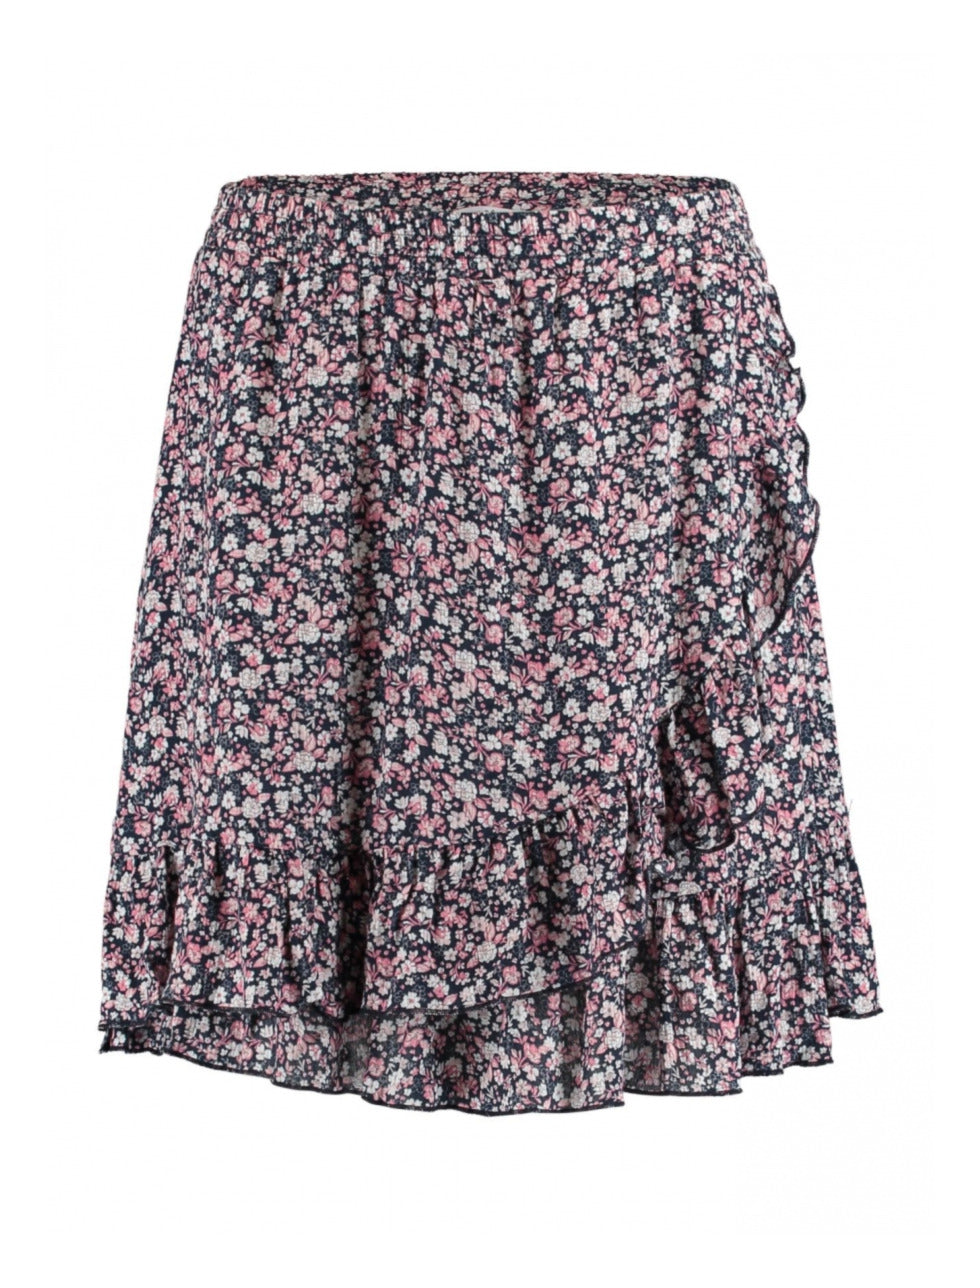 Kira Navy Floral Mini Skirt